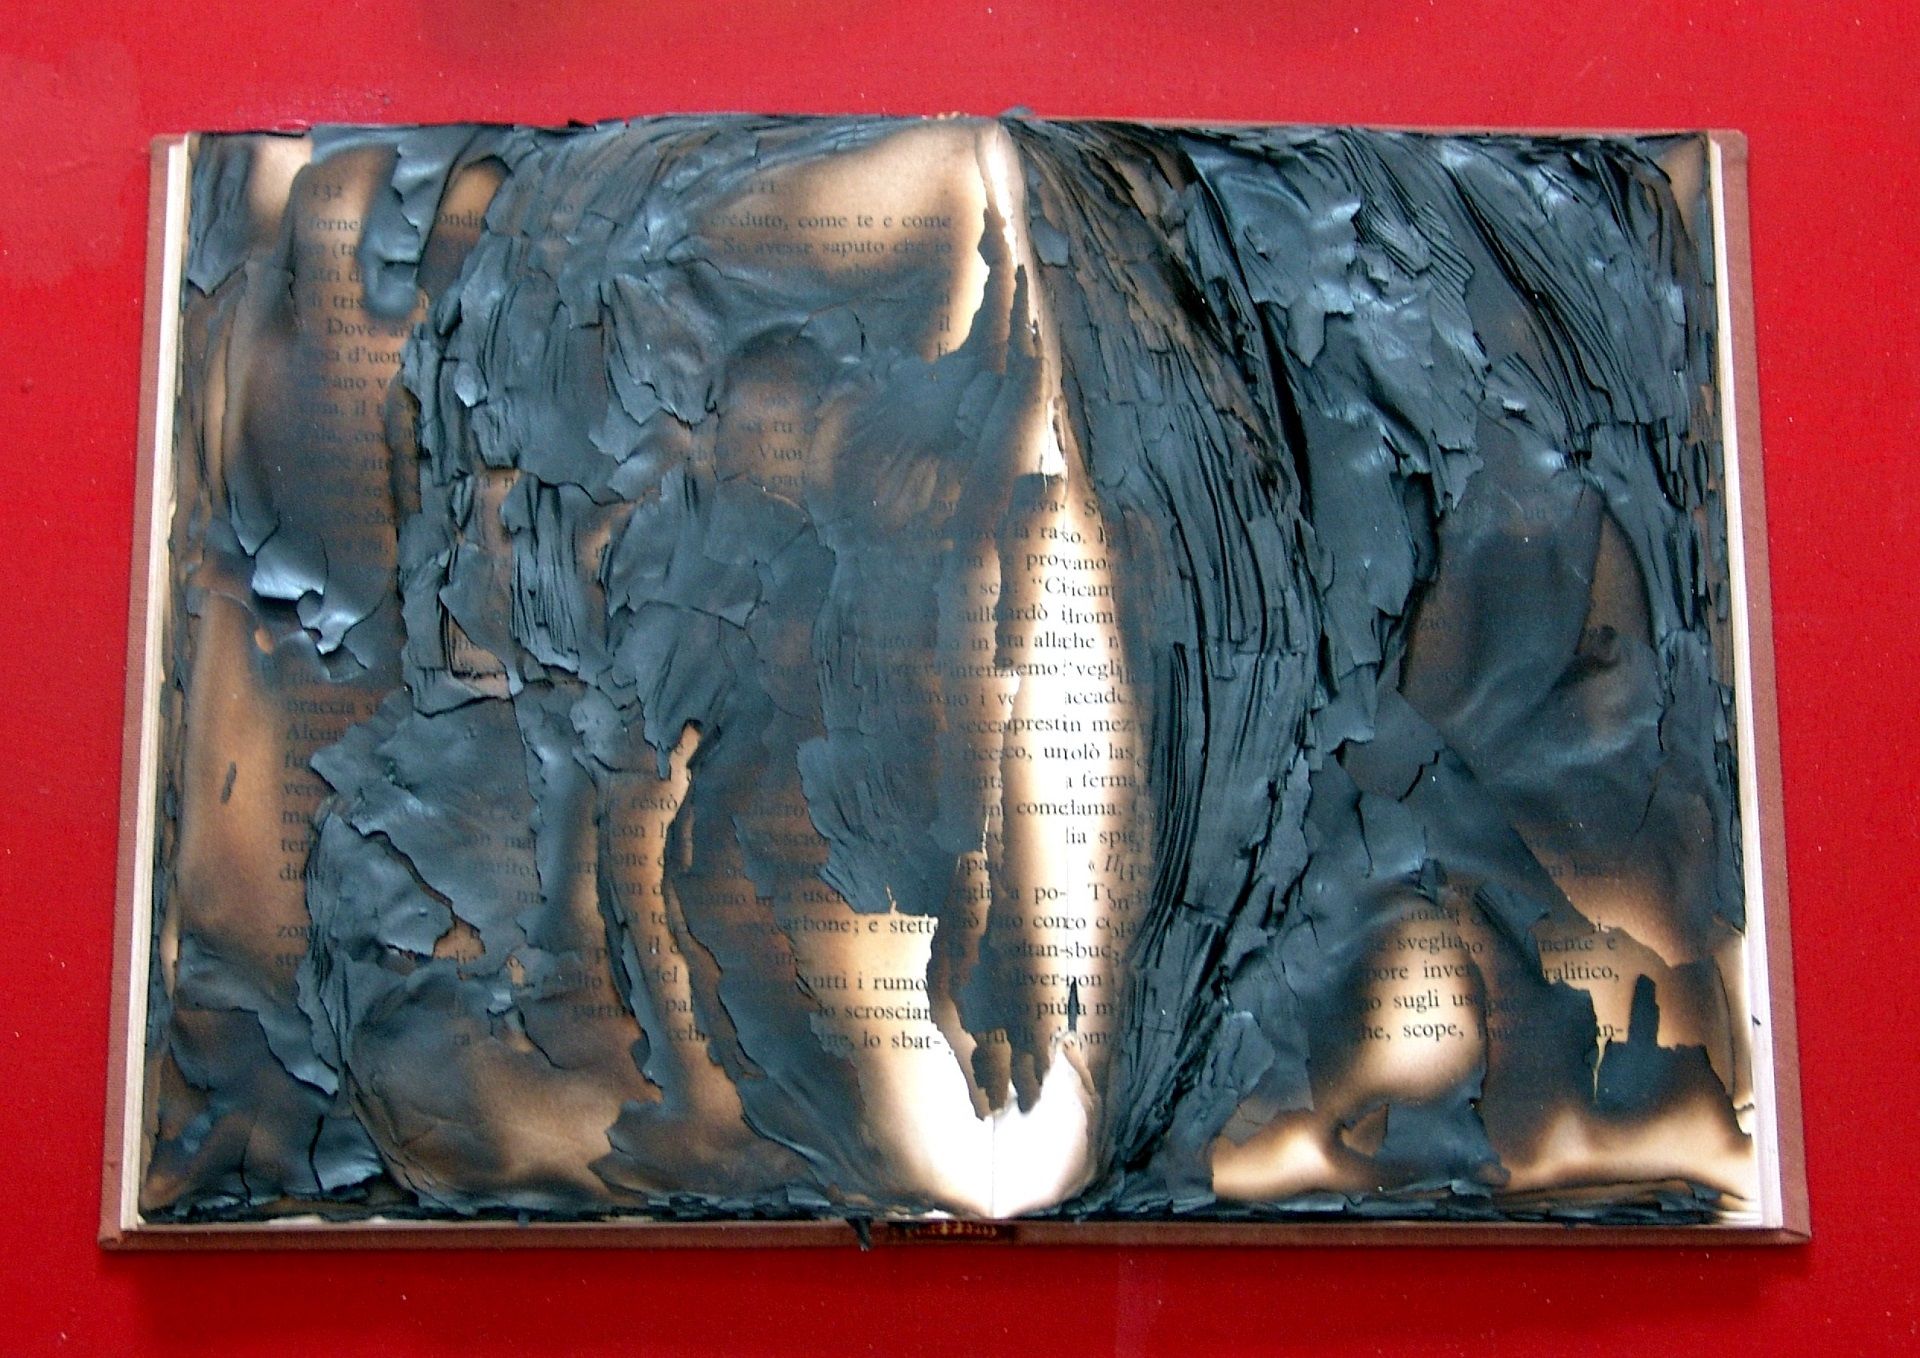 BERNARD AUBERTIN Livre brûlé, 2010, libro bruciato su tavola, 50x60 cm

firma de&hellip;